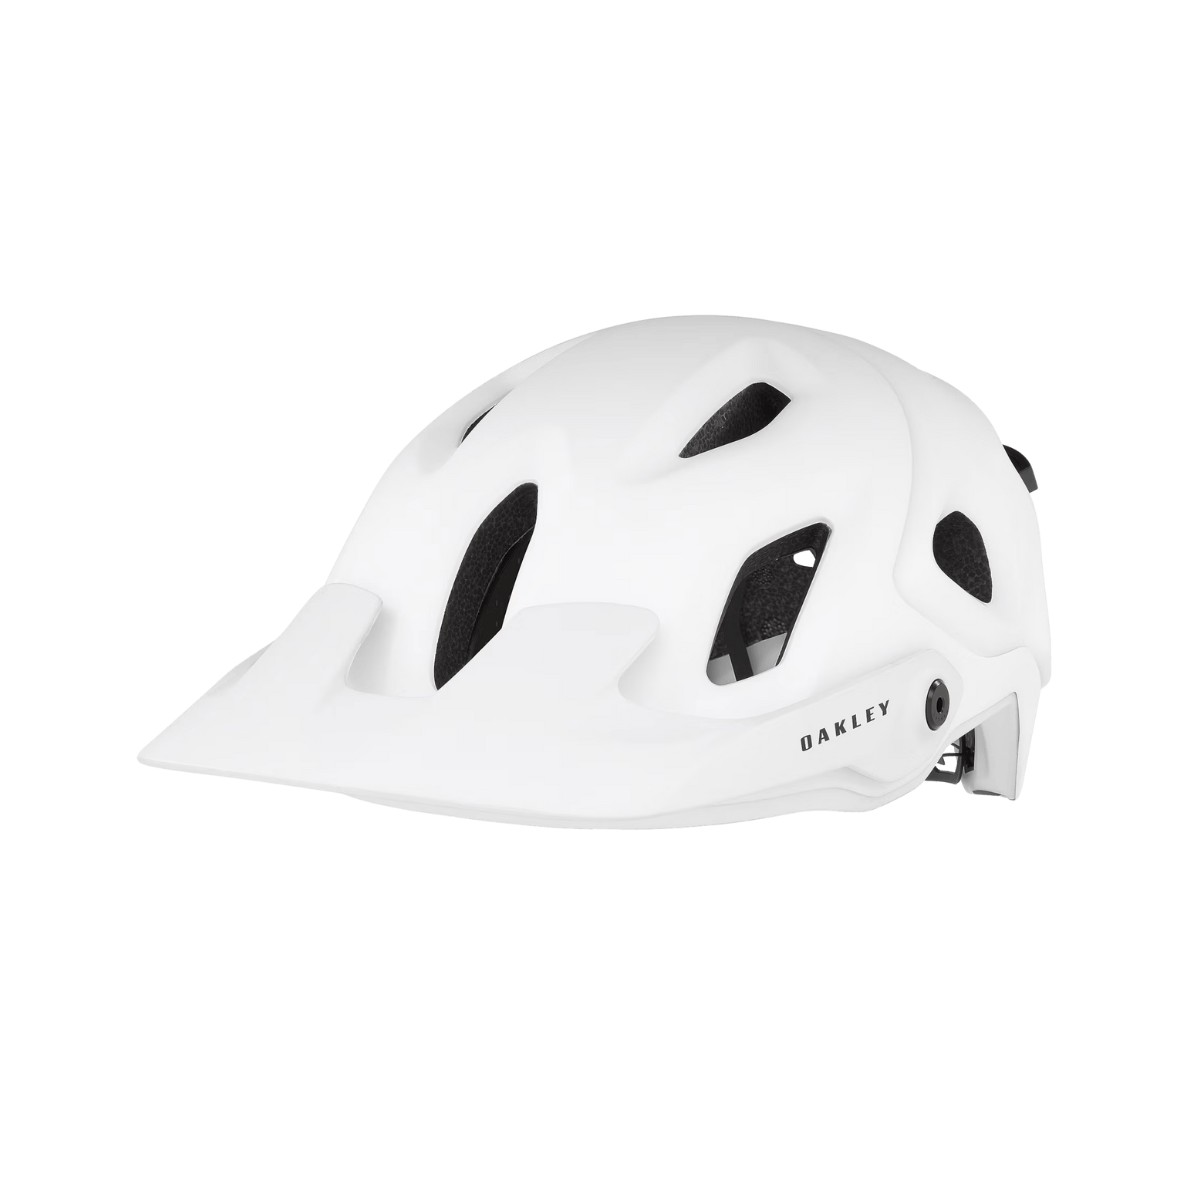 Vielseitiger günstig Kaufen-Oakley DRT5 Mips Weißer Helm, Größe M (54-58 cm). Oakley DRT5 Mips Weißer Helm, Größe M (54-58 cm) <![CDATA[Oakley DRT5 Mips Weißer Helm Der Oakley DRT5 MIPS Helm ist ein sehr vielseitiger und einfach zu bedienender Trailhel